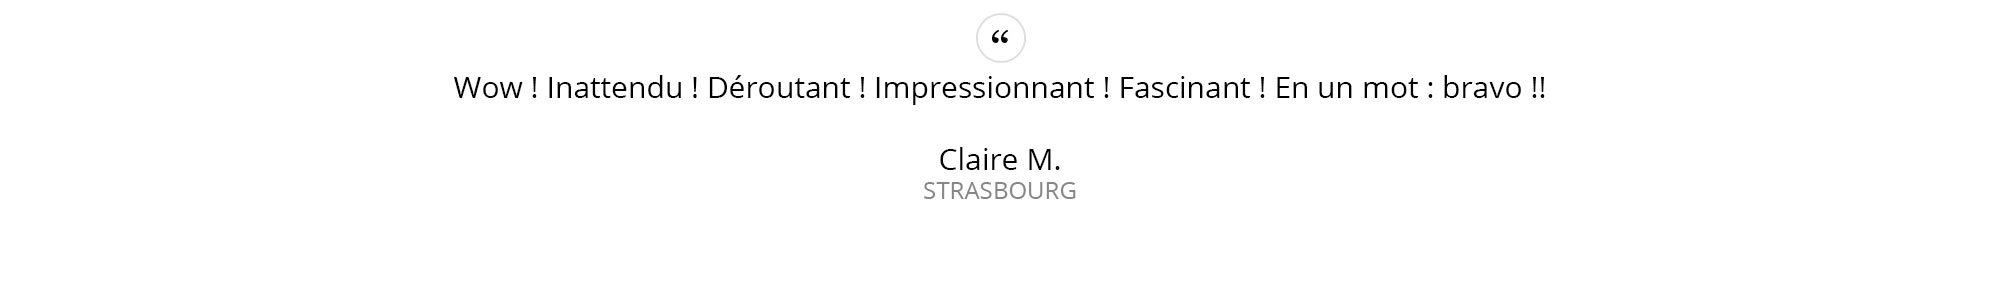 Claire-M.---STRASBOURG